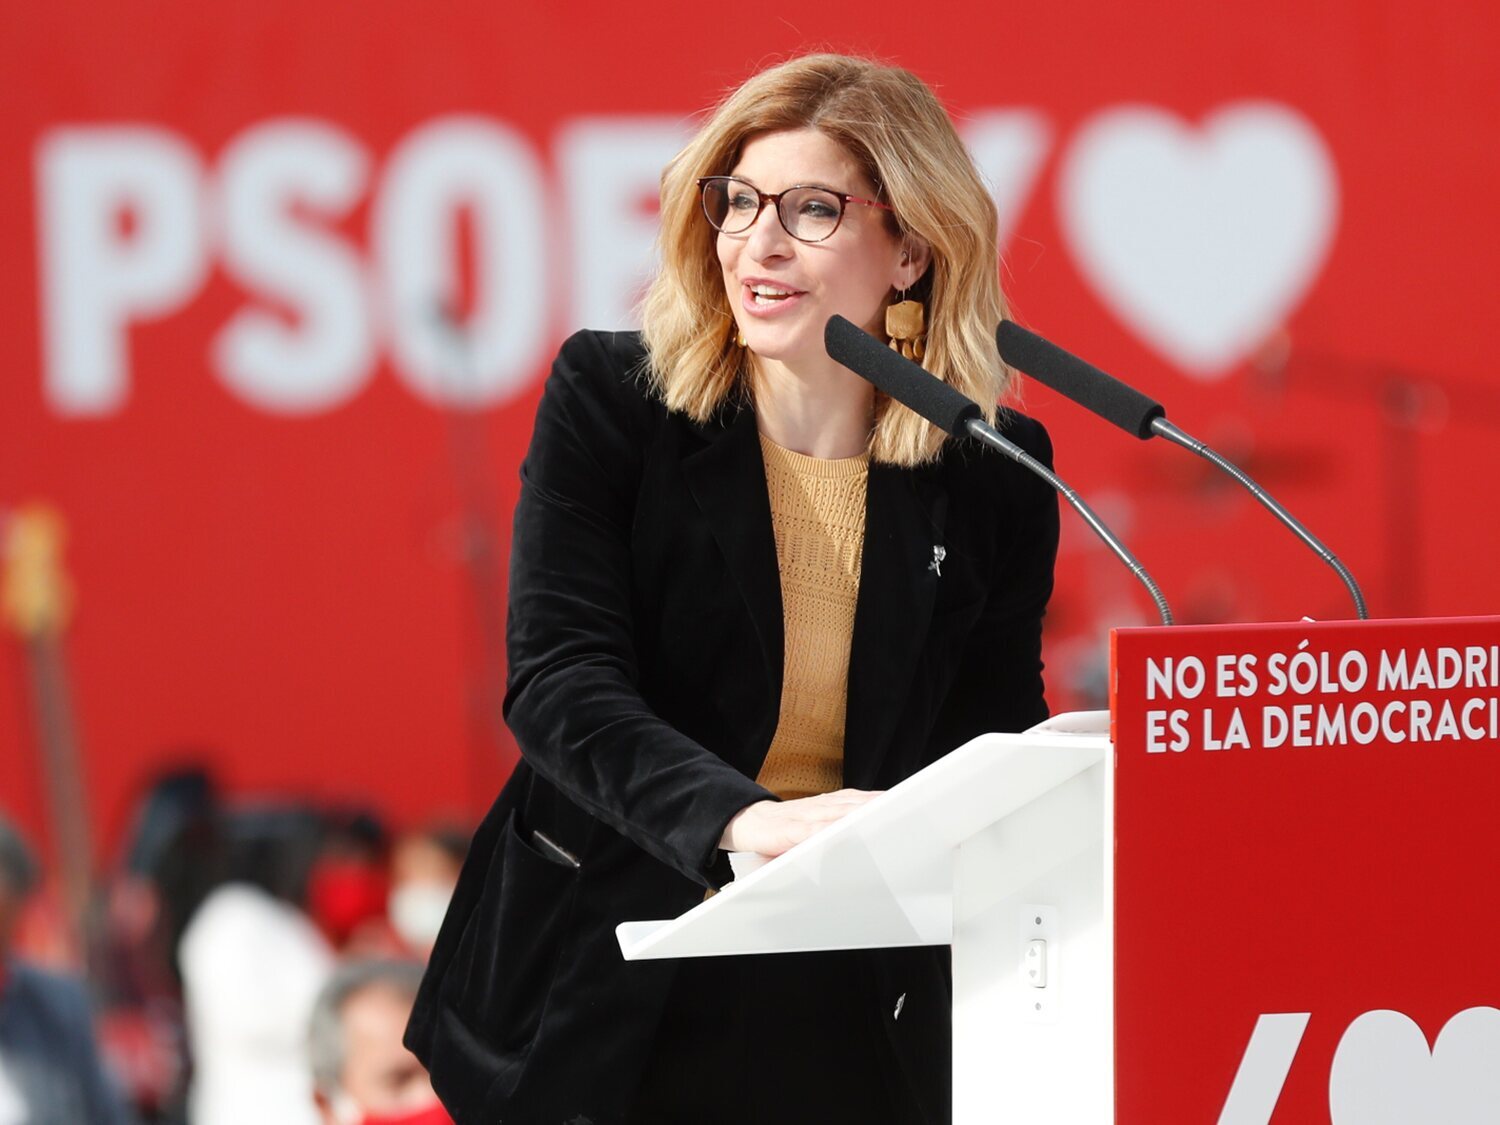 El PSOE recurre ante el Tribunal Constitucional la ley de Ayuso para controlar Telemadrid